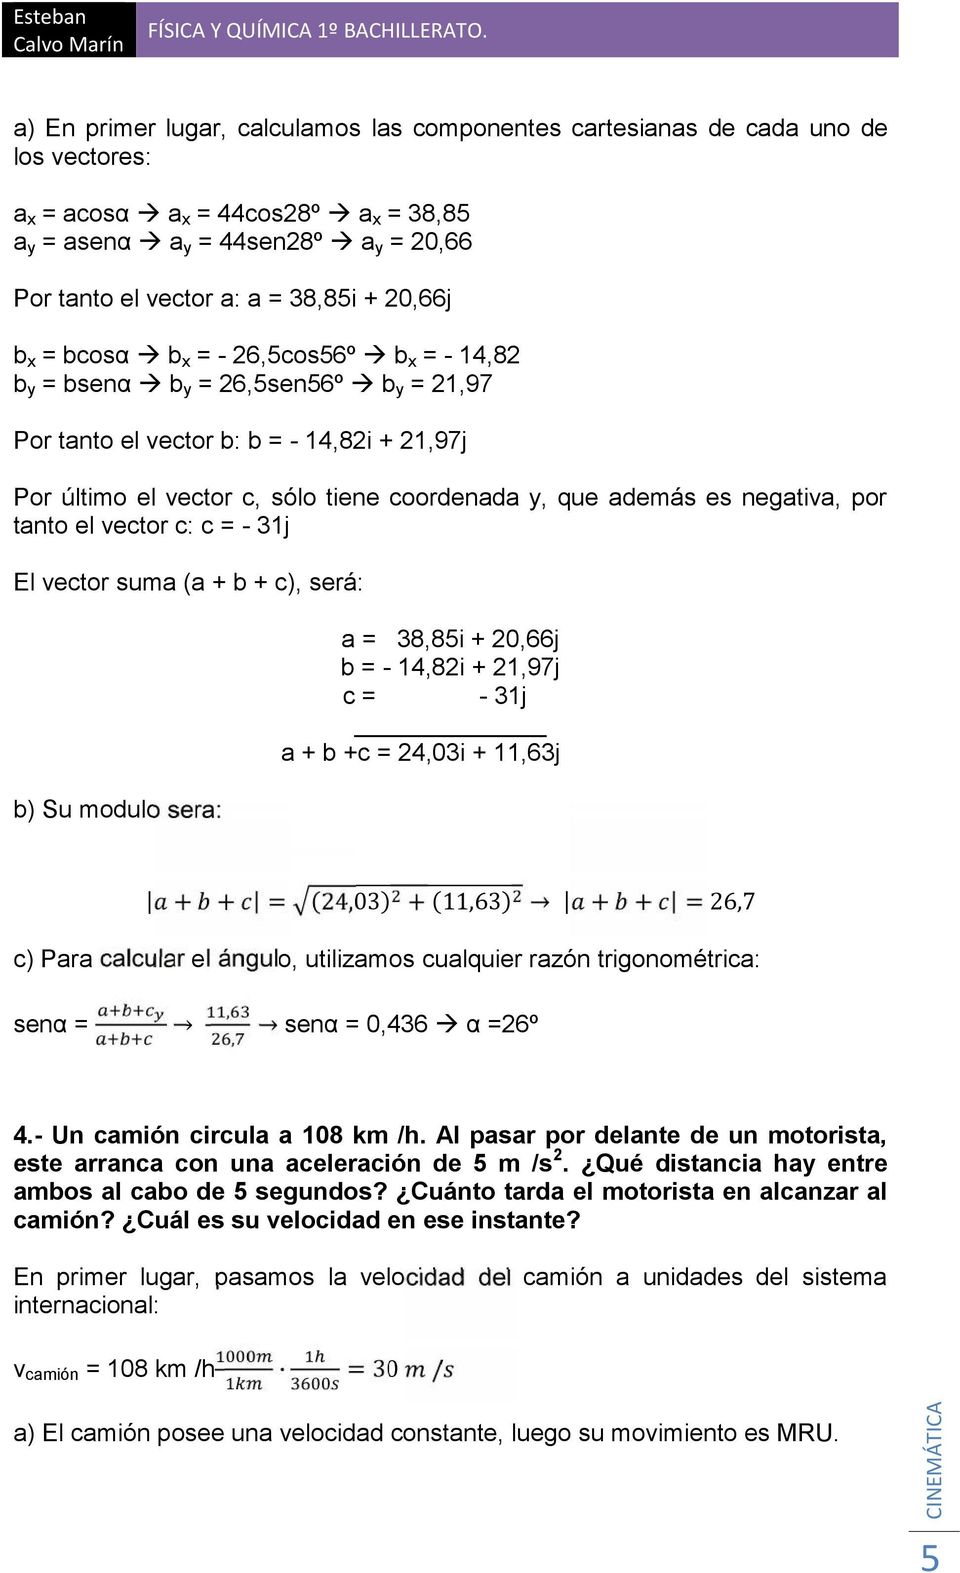 negativa, por tanto el vector c: c = - 3j El vector suma (a + b + c), será: b) Su modulo sera: a = 38,85i + 20,66j b = - 4,82i + 2,97j c = - 3j a + b +c = 24,03i +,63j + + = (24,03) + (,63) + + =